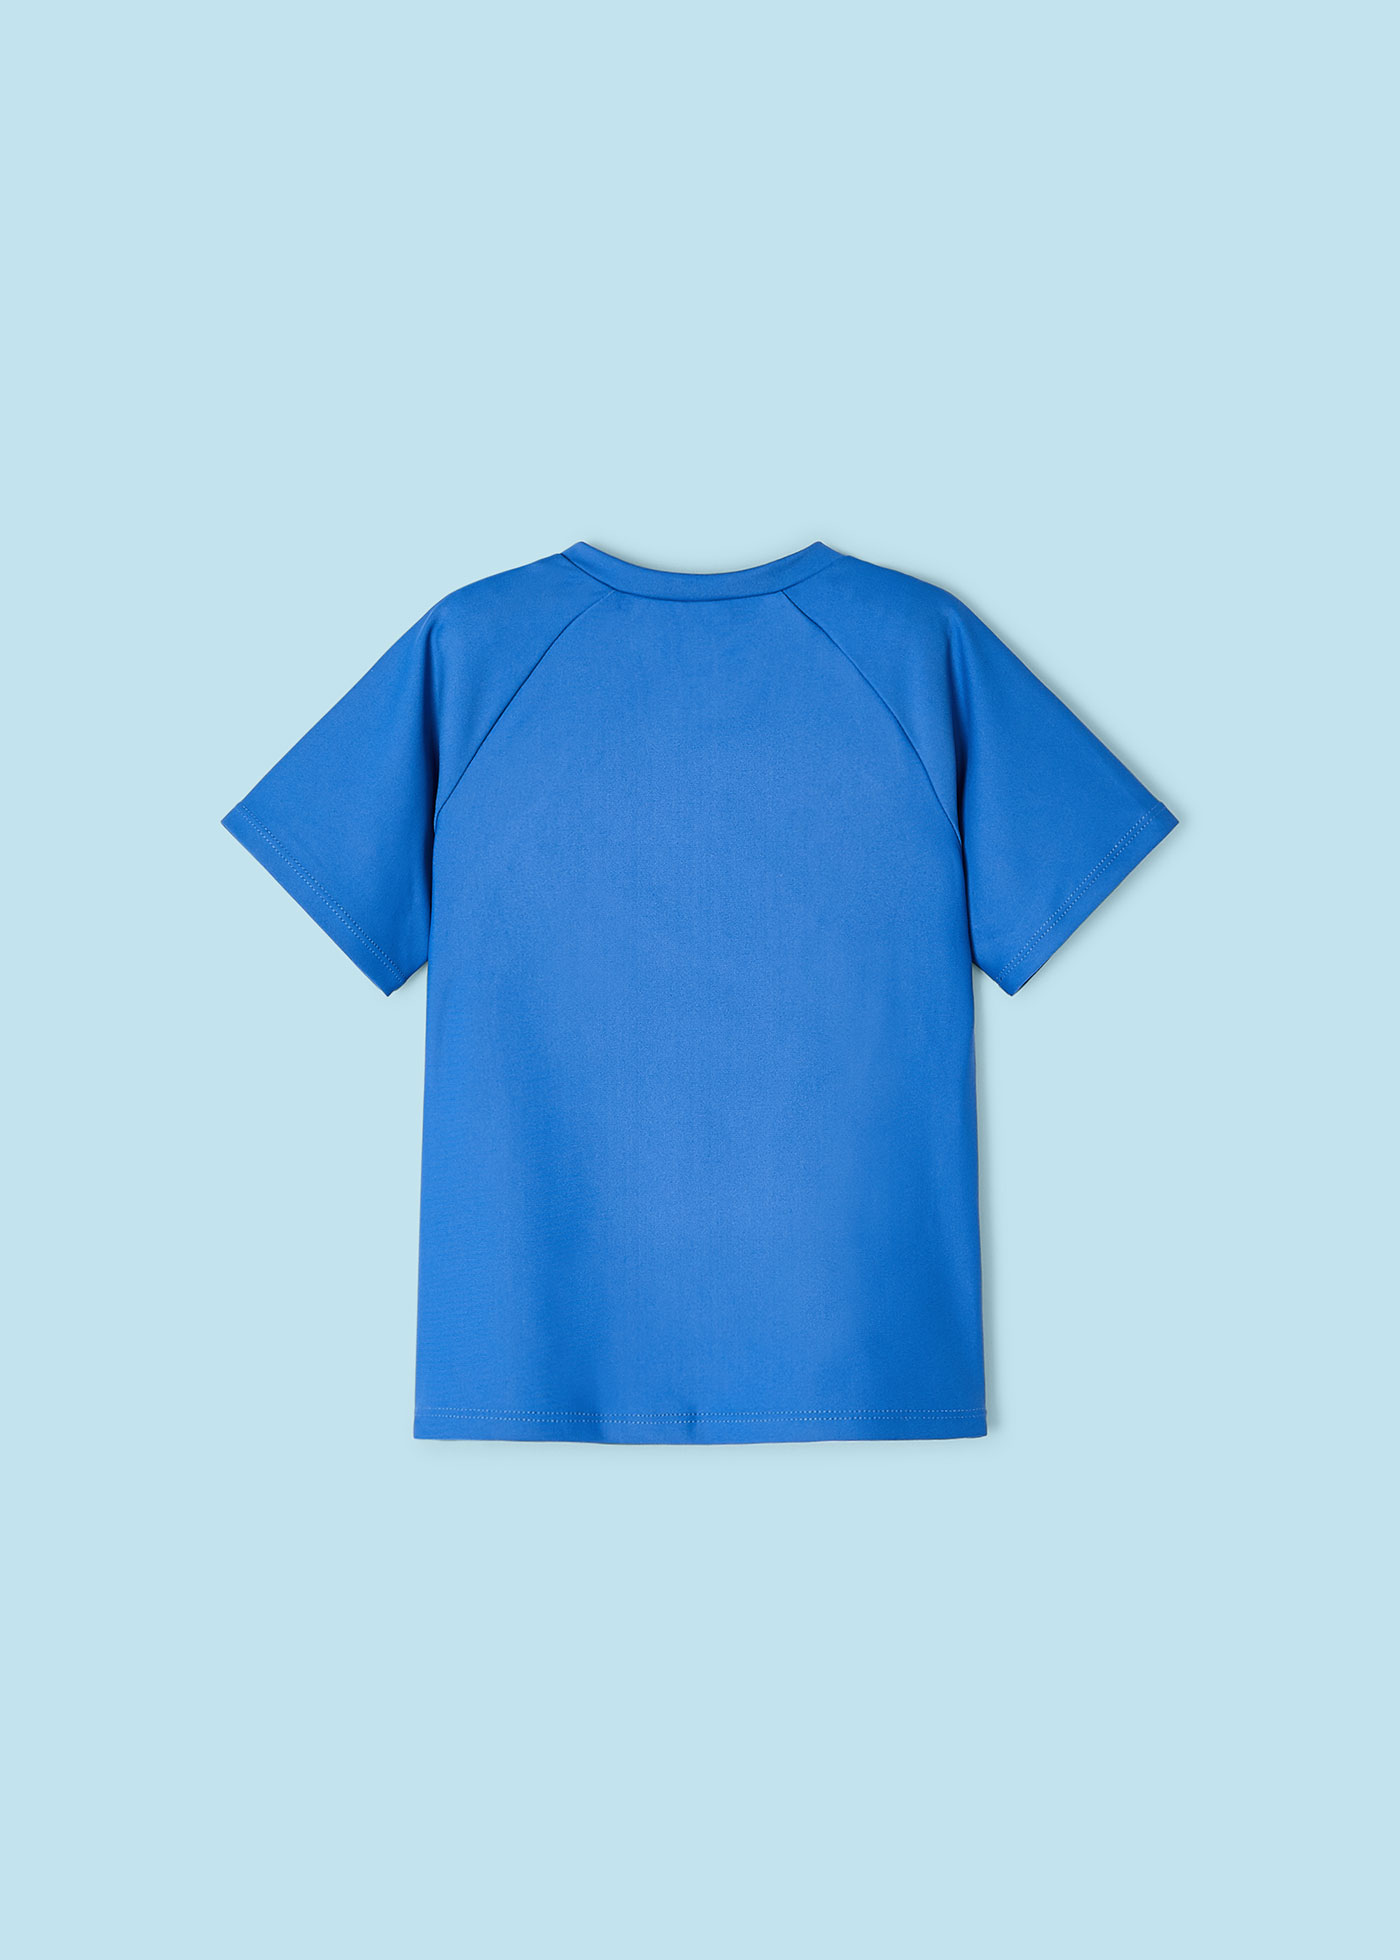 T-Shirt Sonnenschutz 40 UPF Jungen